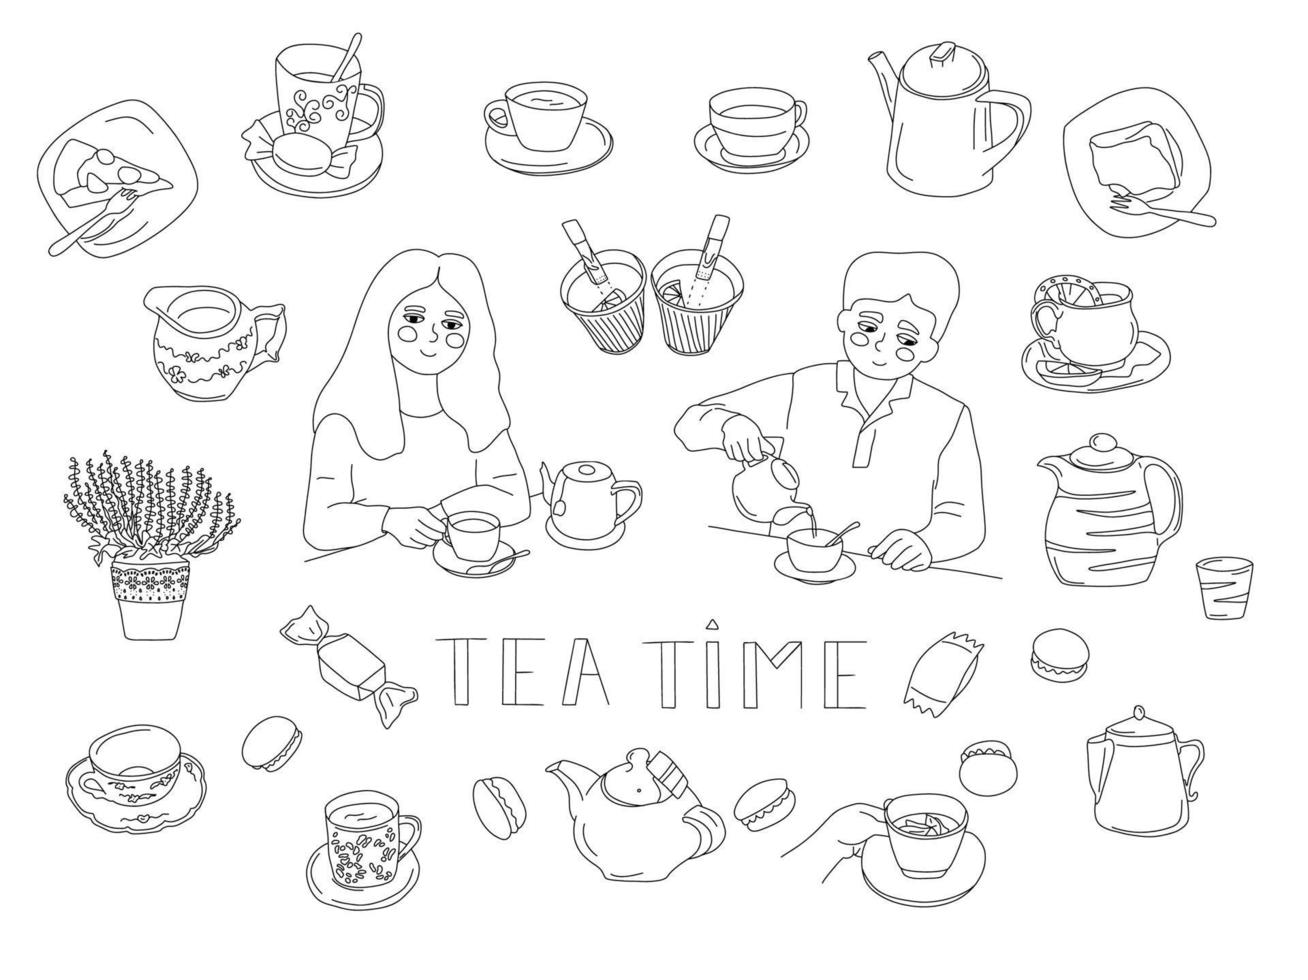 großes Doodle-Set mit Tea-Time-Artikeln. Mann Frau mit Tasse Tee, Teekannen, Kuchen, Milchkännchen, Wasserkocher, Süßigkeiten, Teebeuteln, Tee zum Mitnehmen, Café-Interieur. Vektor-Illustration. vektor